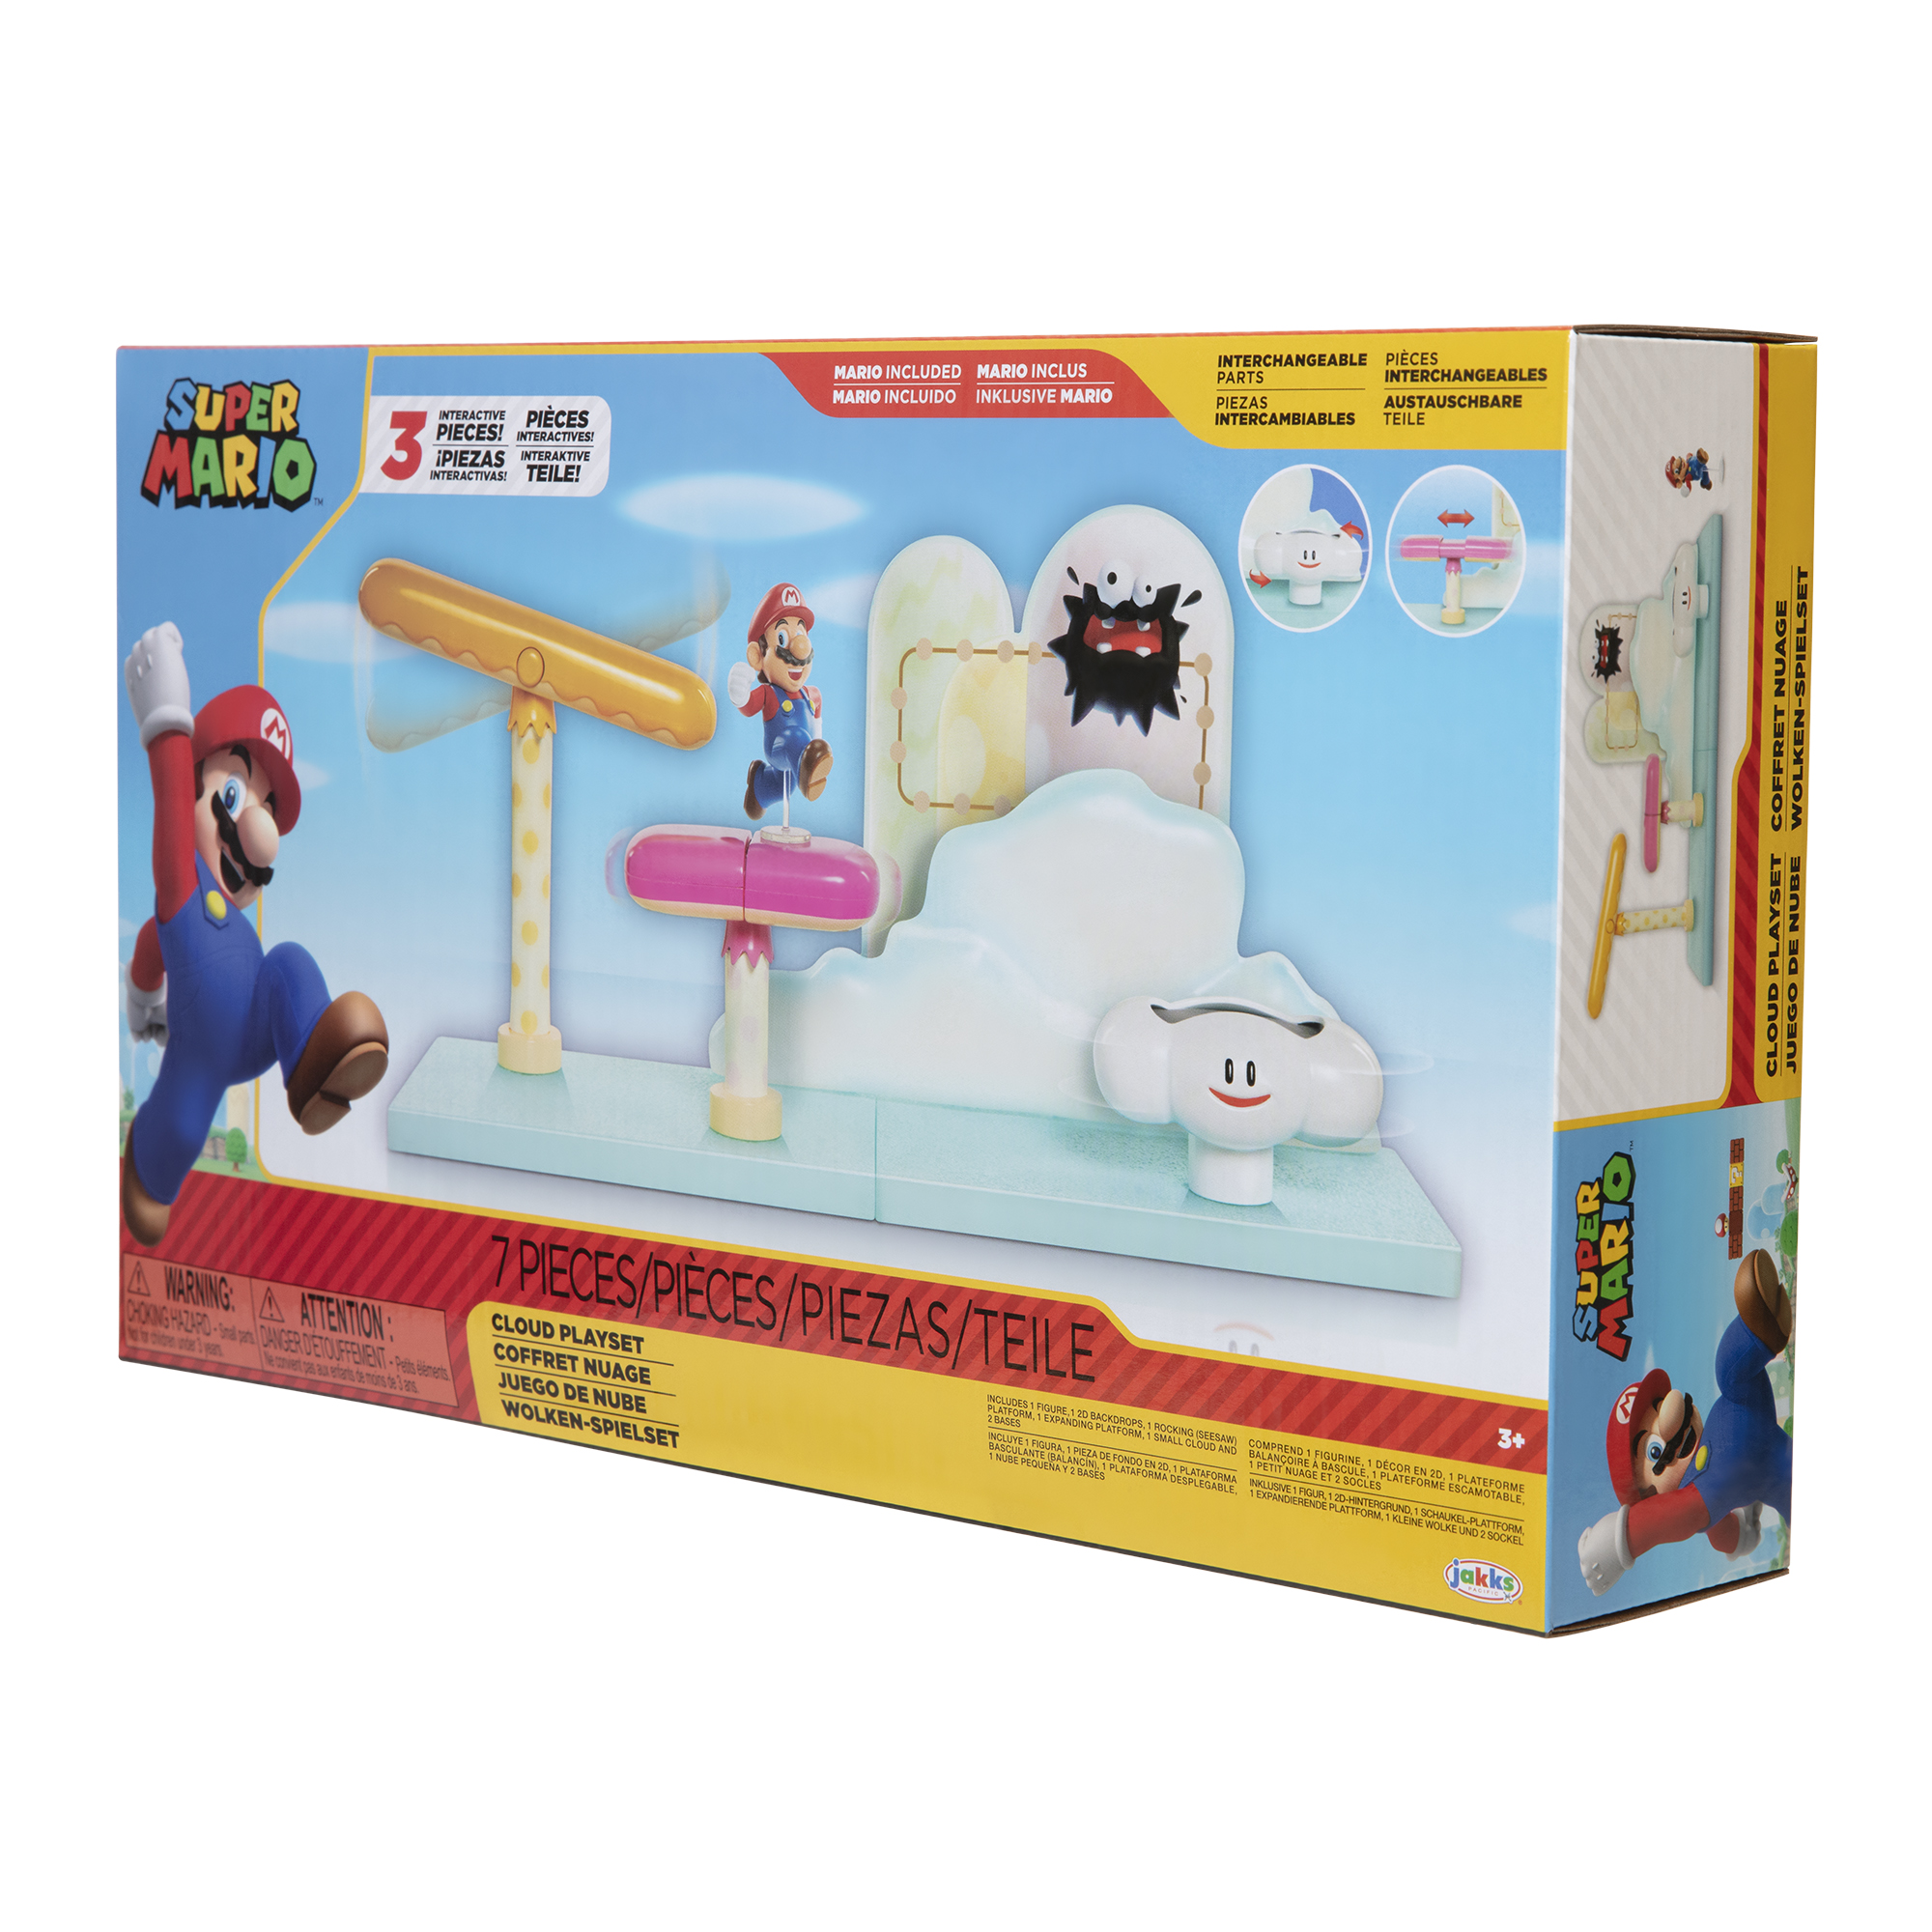 incluido Mario piezas & PACIFIC Super Mario Nube Spielware JAKKS Playset 7